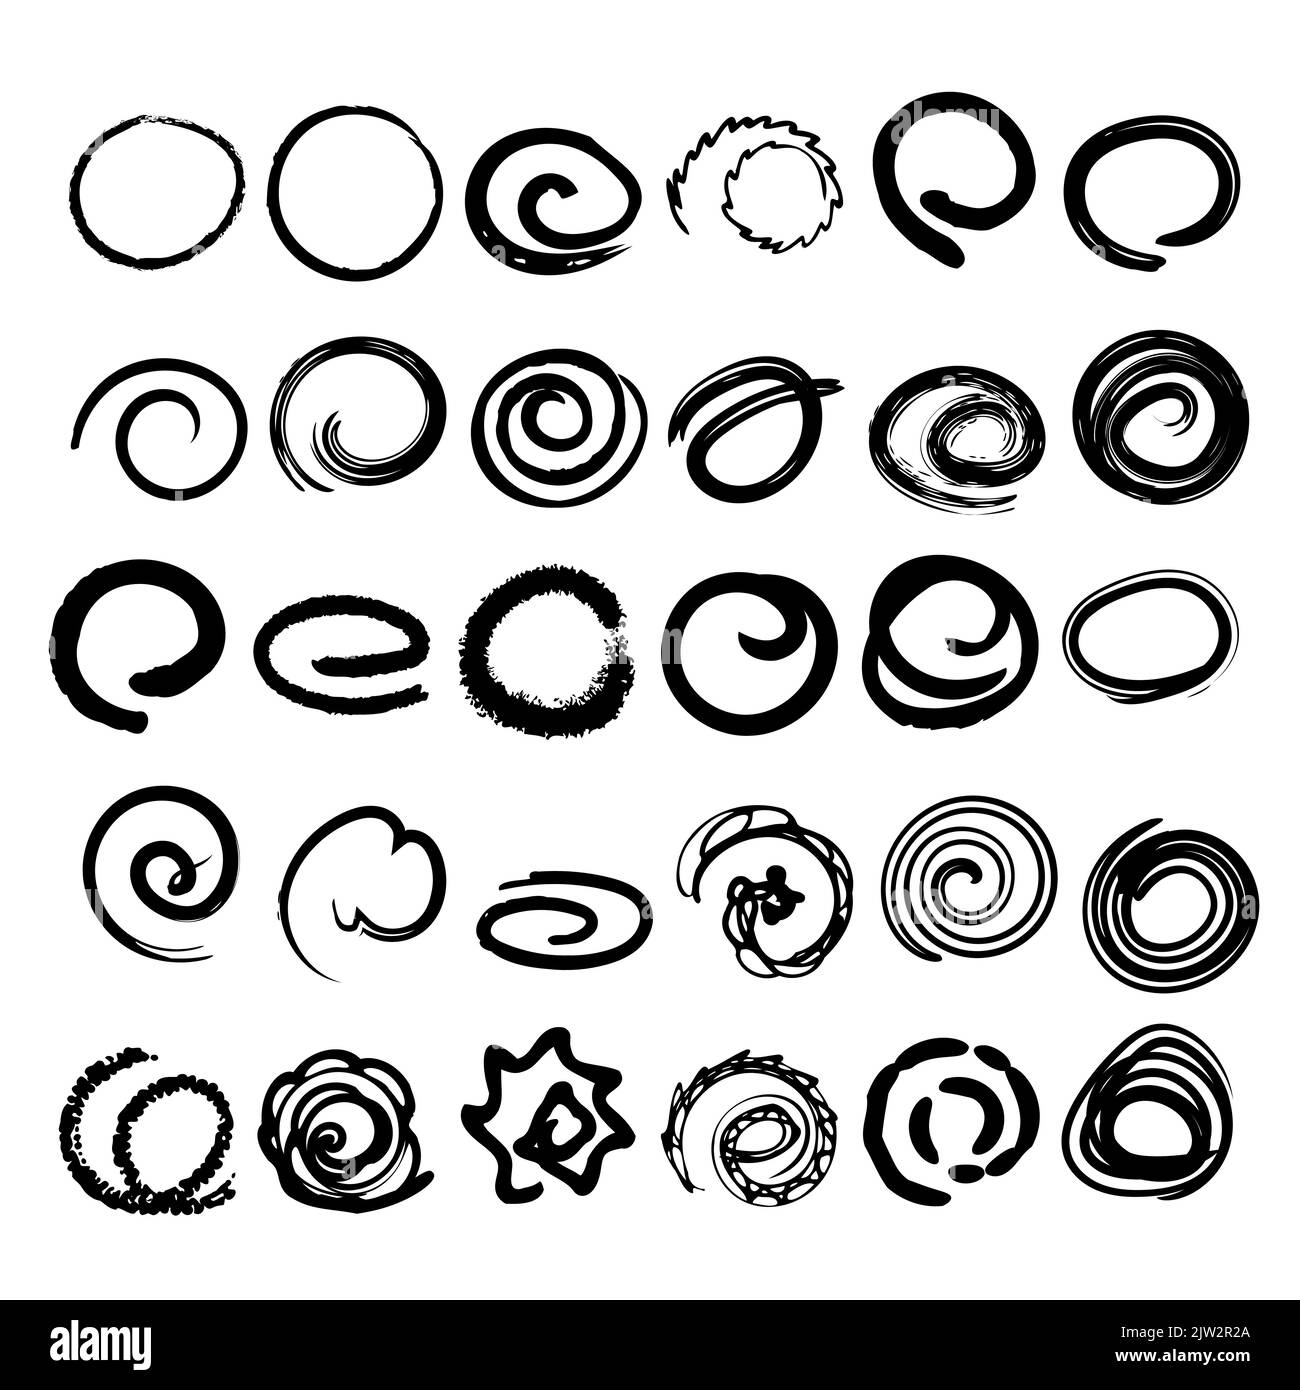 Dessin de cercle, trait de pinceau courbe à main levée à utiliser comme élément dans la conception, illustration vectorielle Illustration de Vecteur